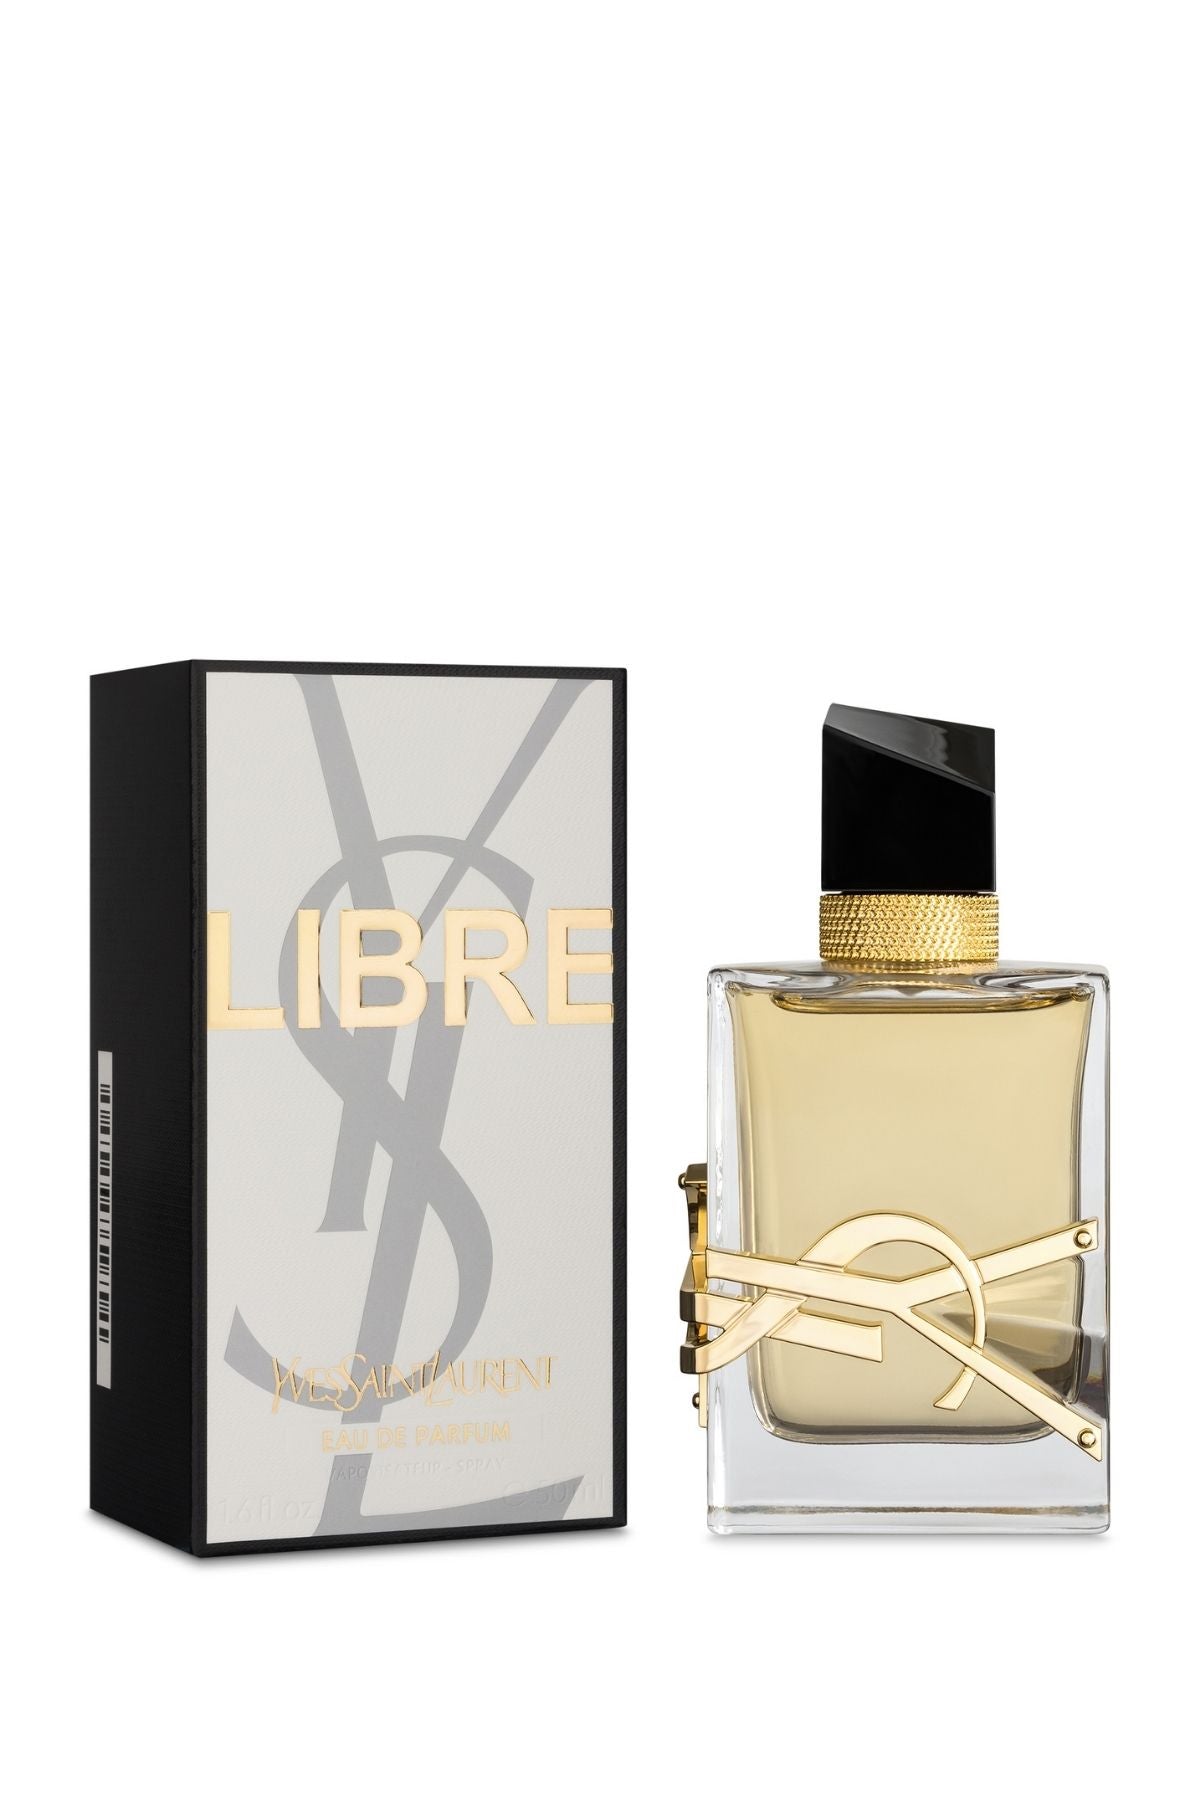 Yves Saint Laurent Libre Eau de Parfum Eau de Parfum